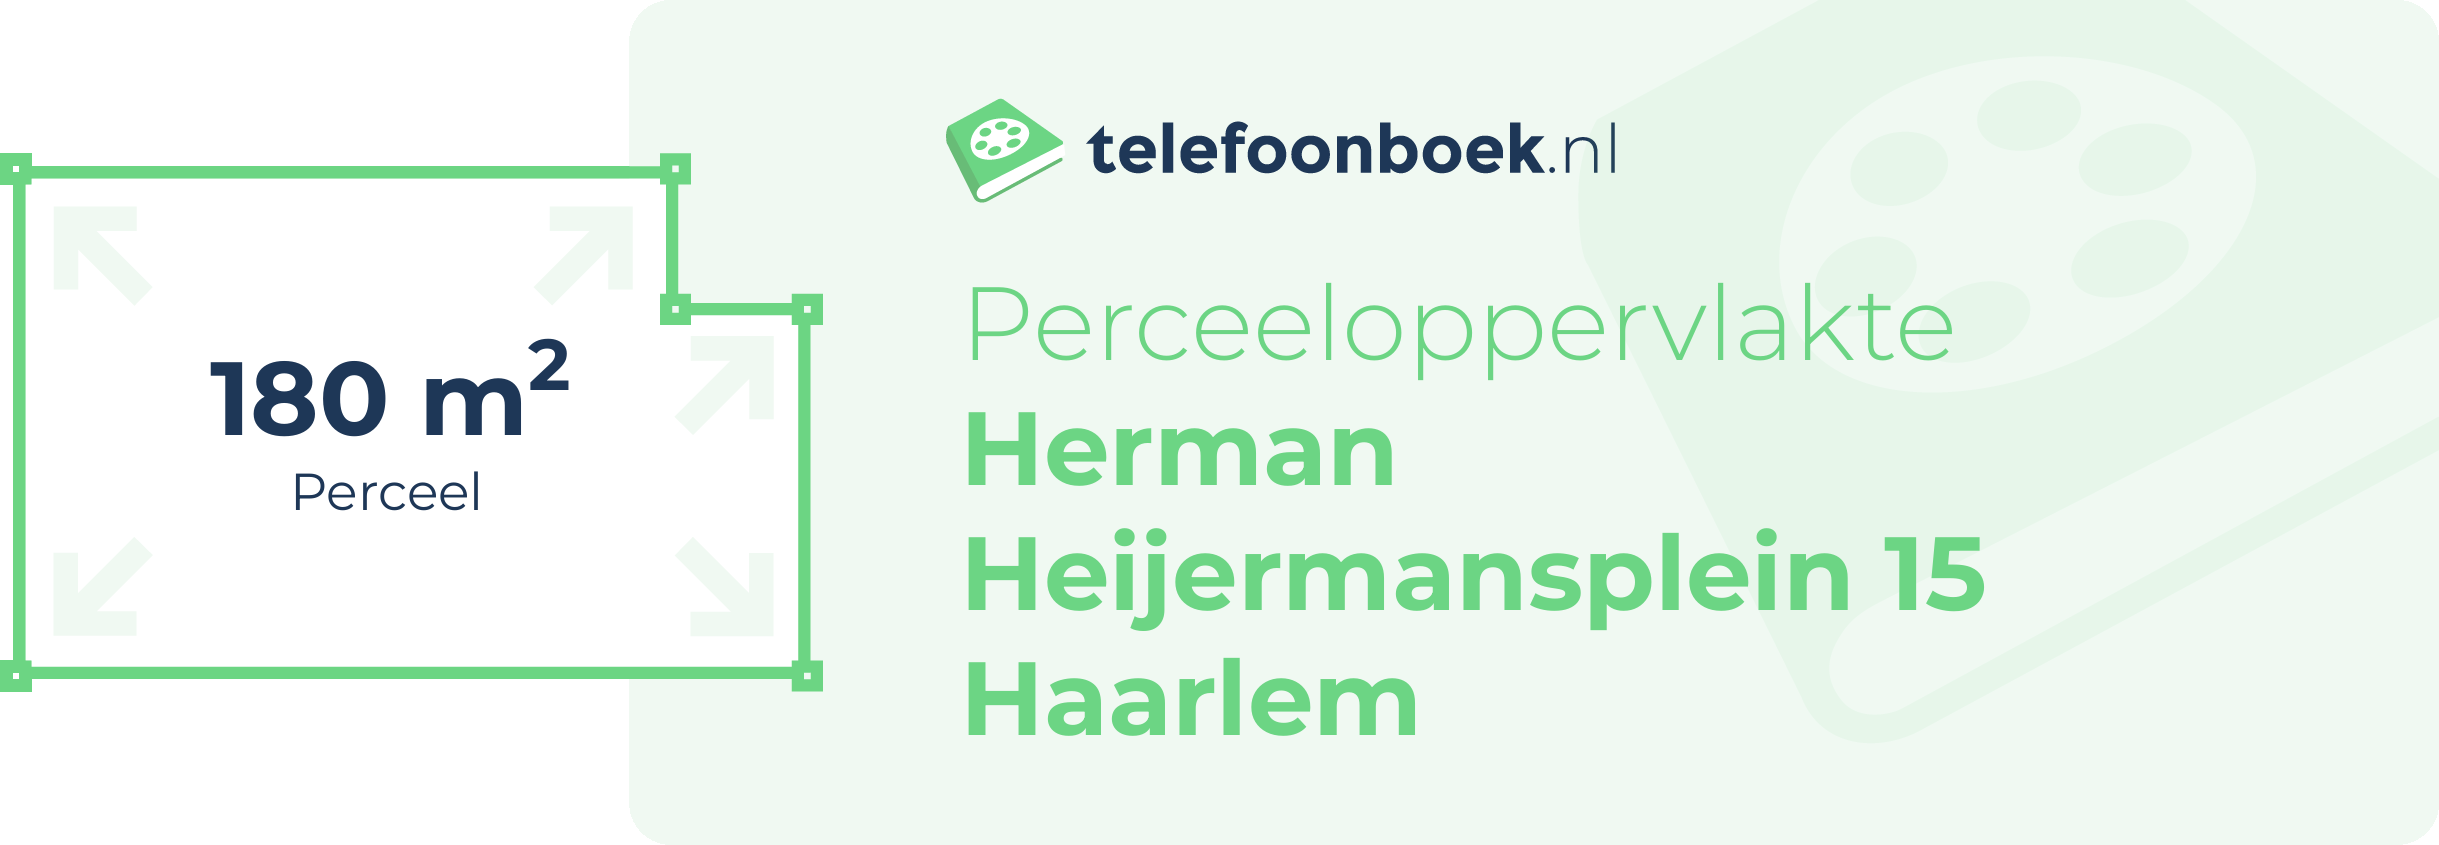 Perceeloppervlakte Herman Heijermansplein 15 Haarlem